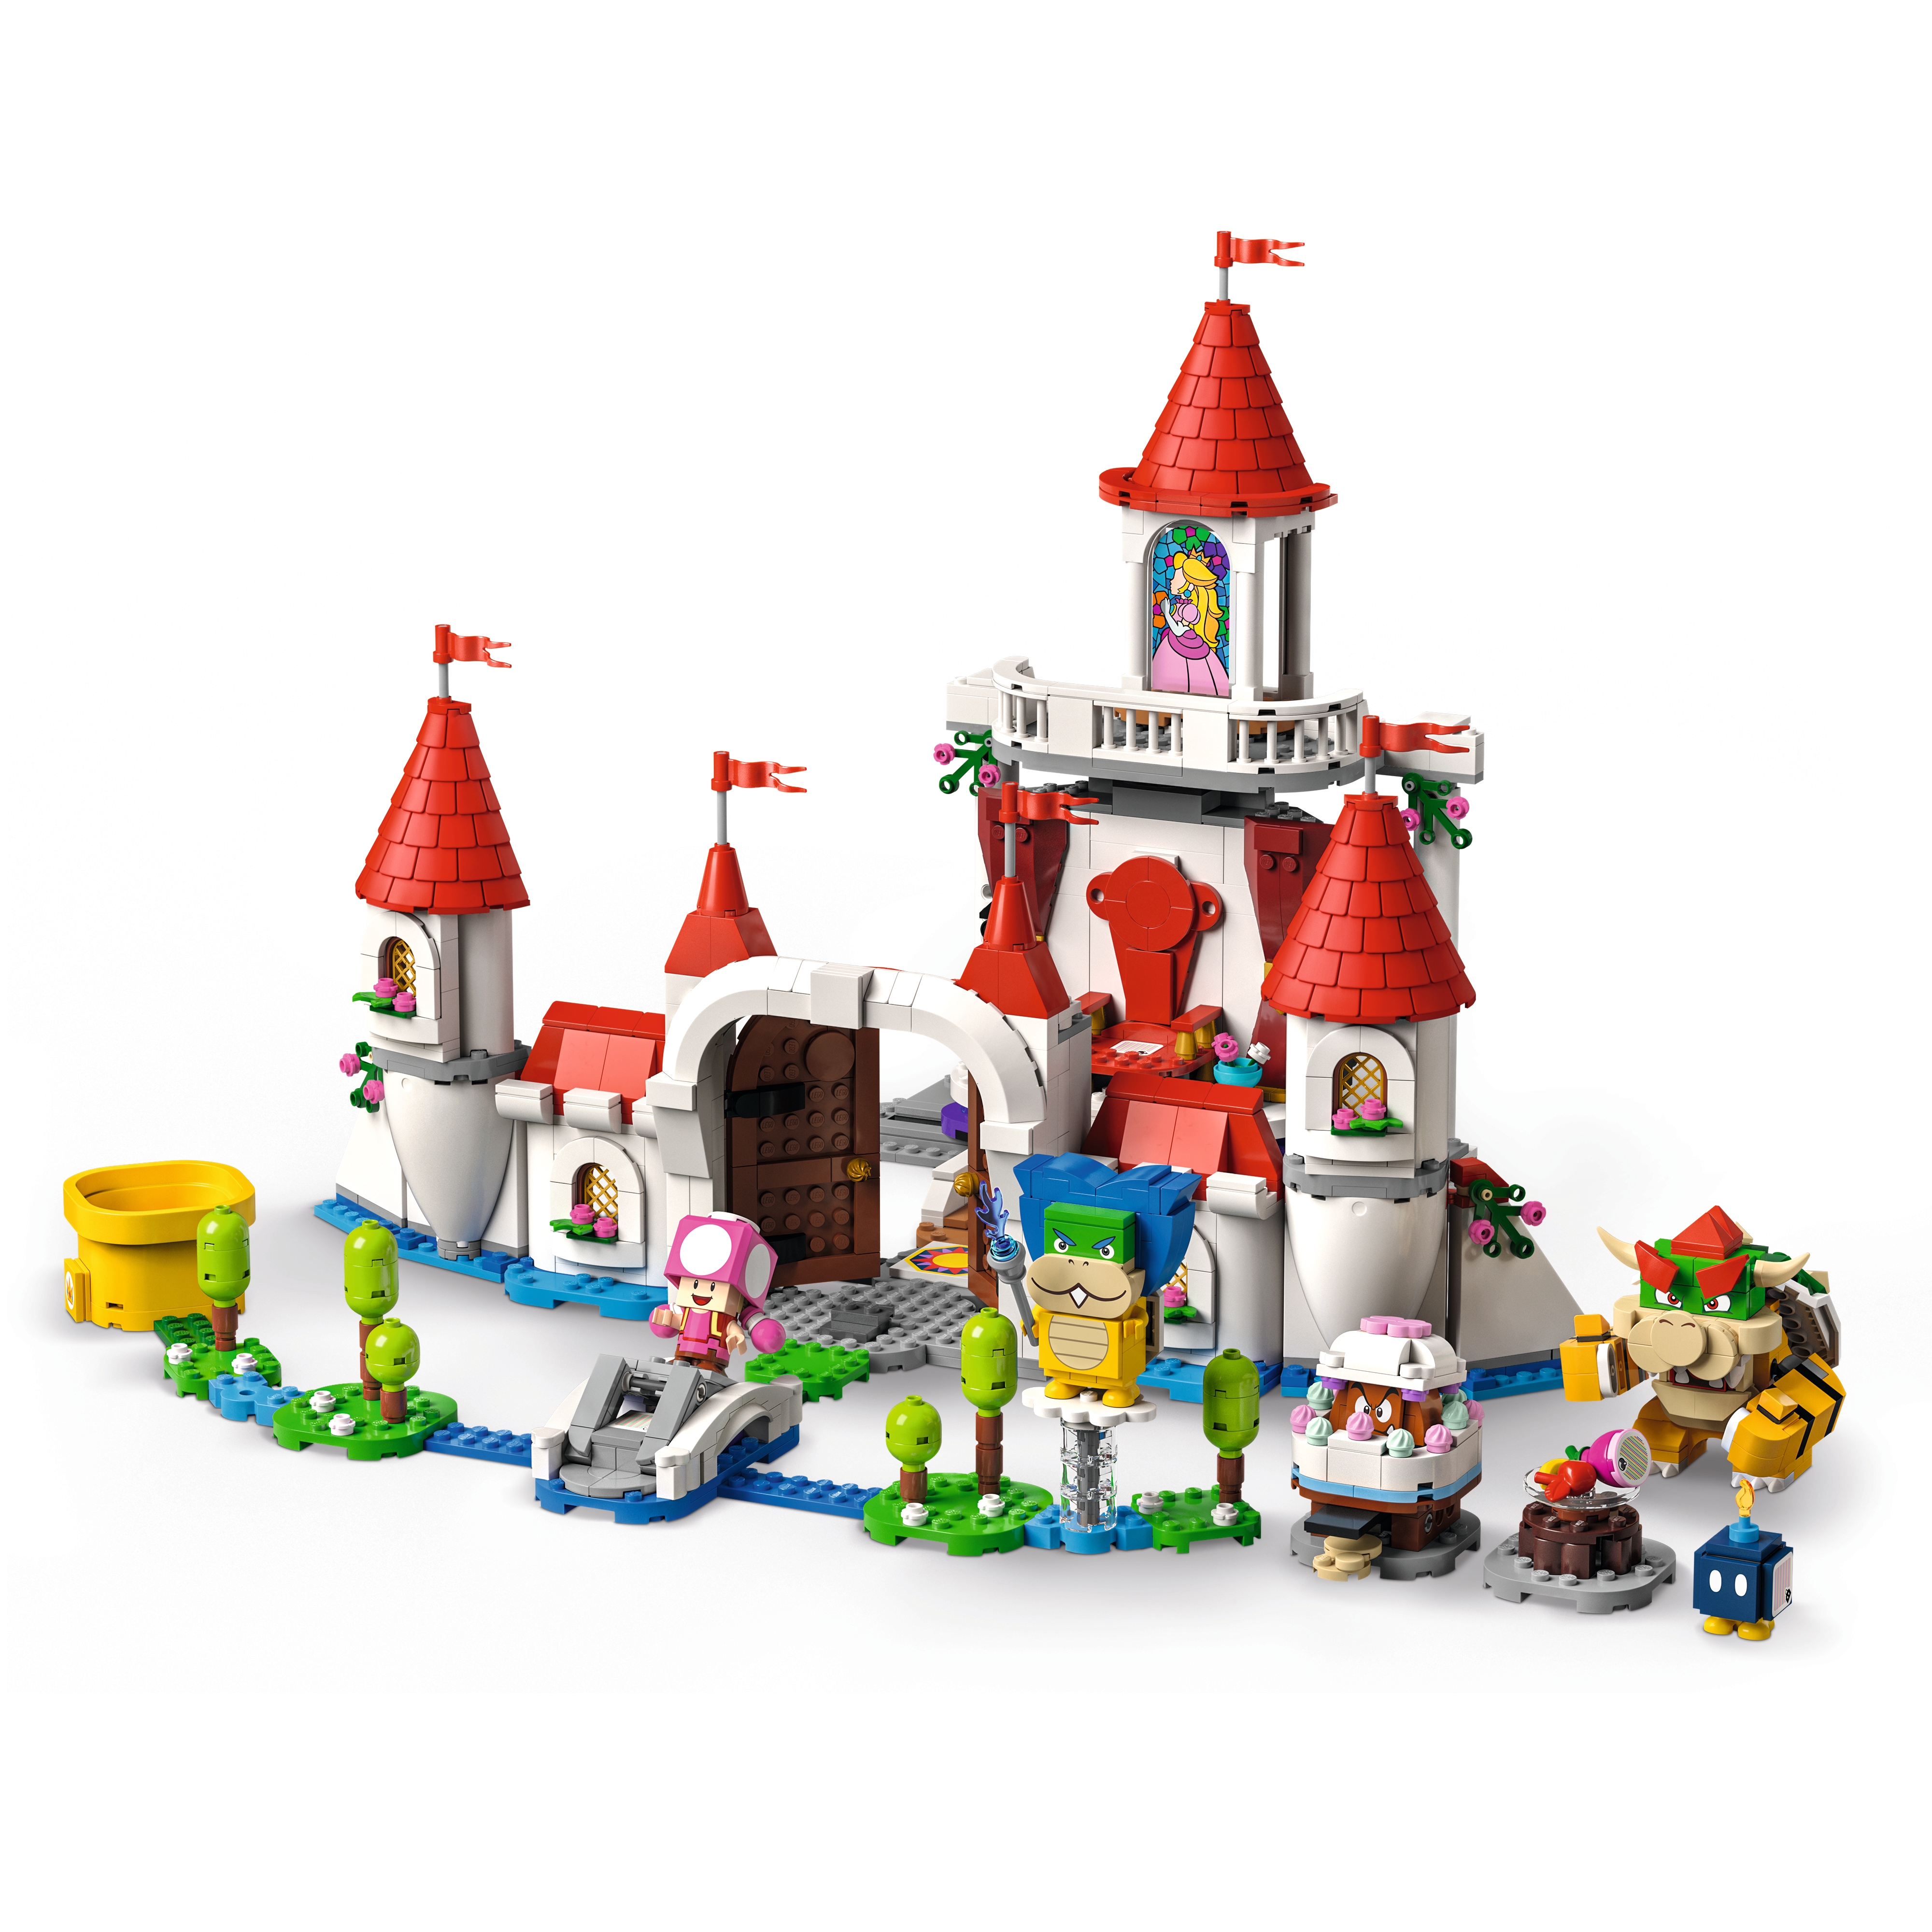 Complete look at LEGO Super Mario Donkey Kong sets! - Jay's Brick Blog